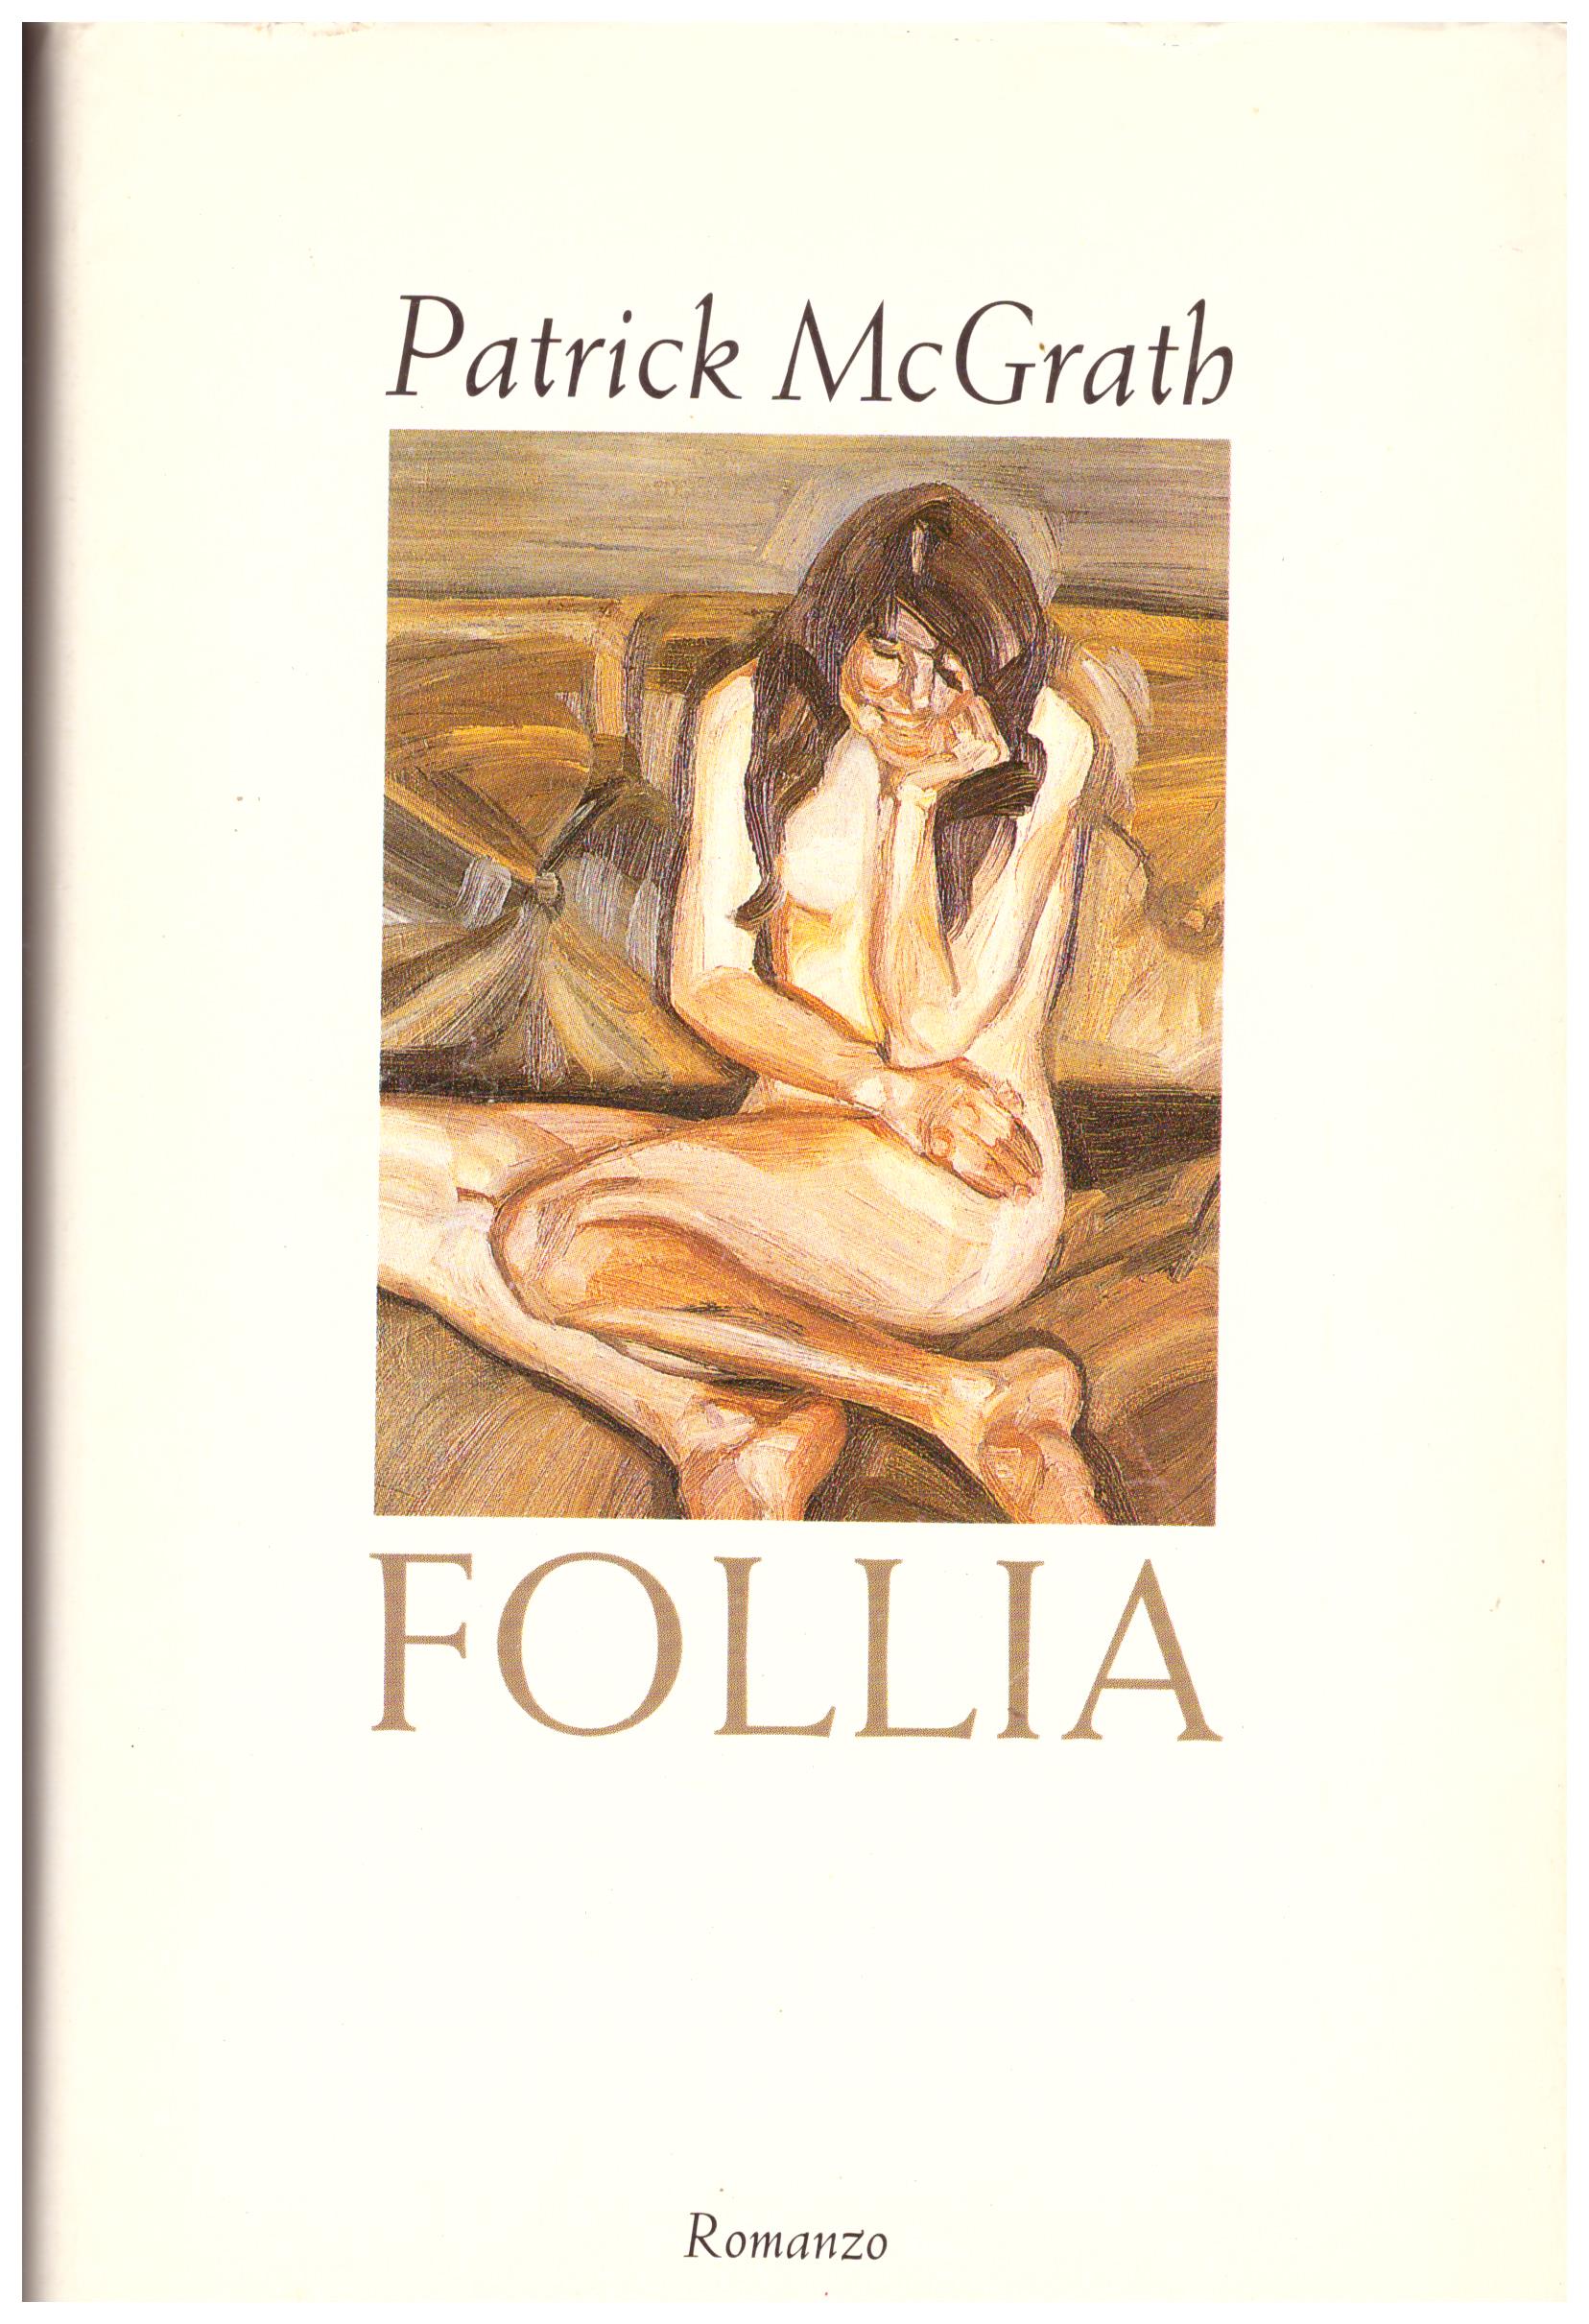 Titolo: Follia Autore: Patrick Mcgrath Editore: cde, 1998